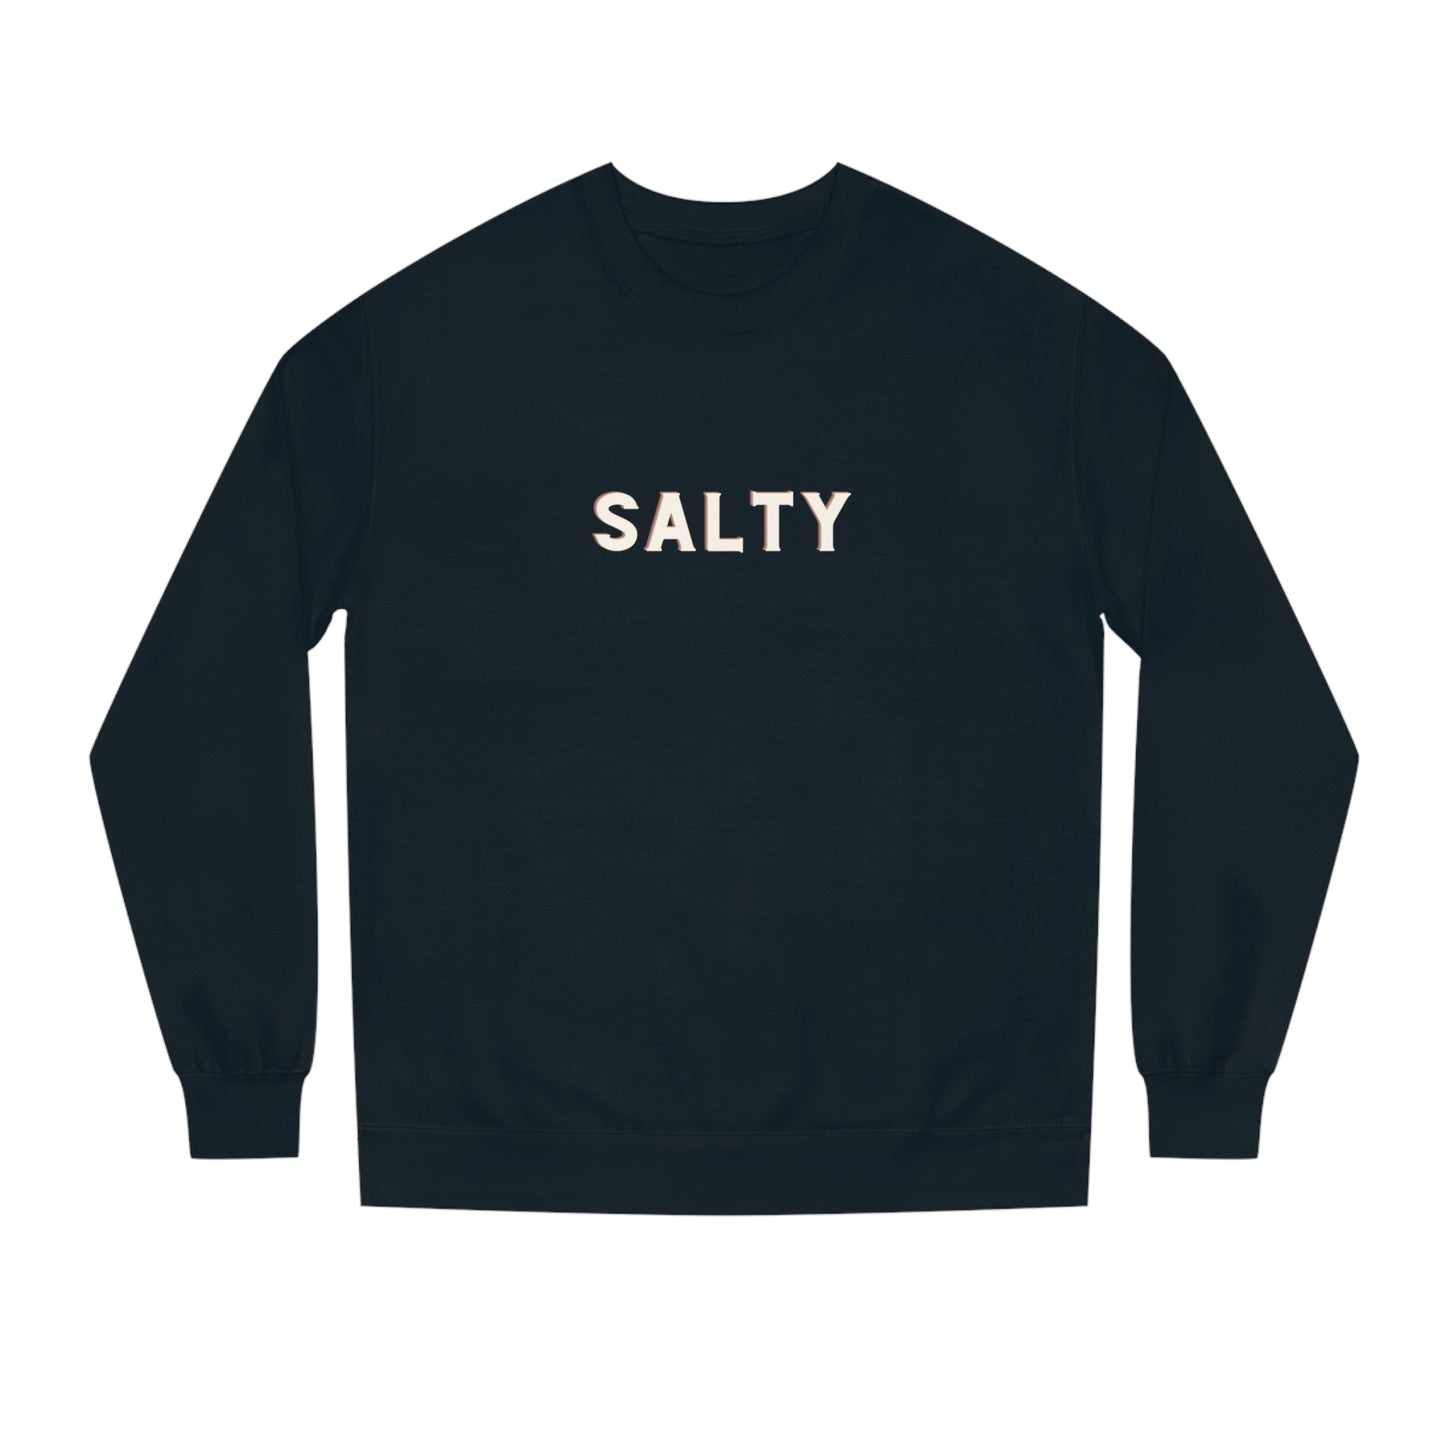 SALTY Crew Neck Graphic Sweatshirt